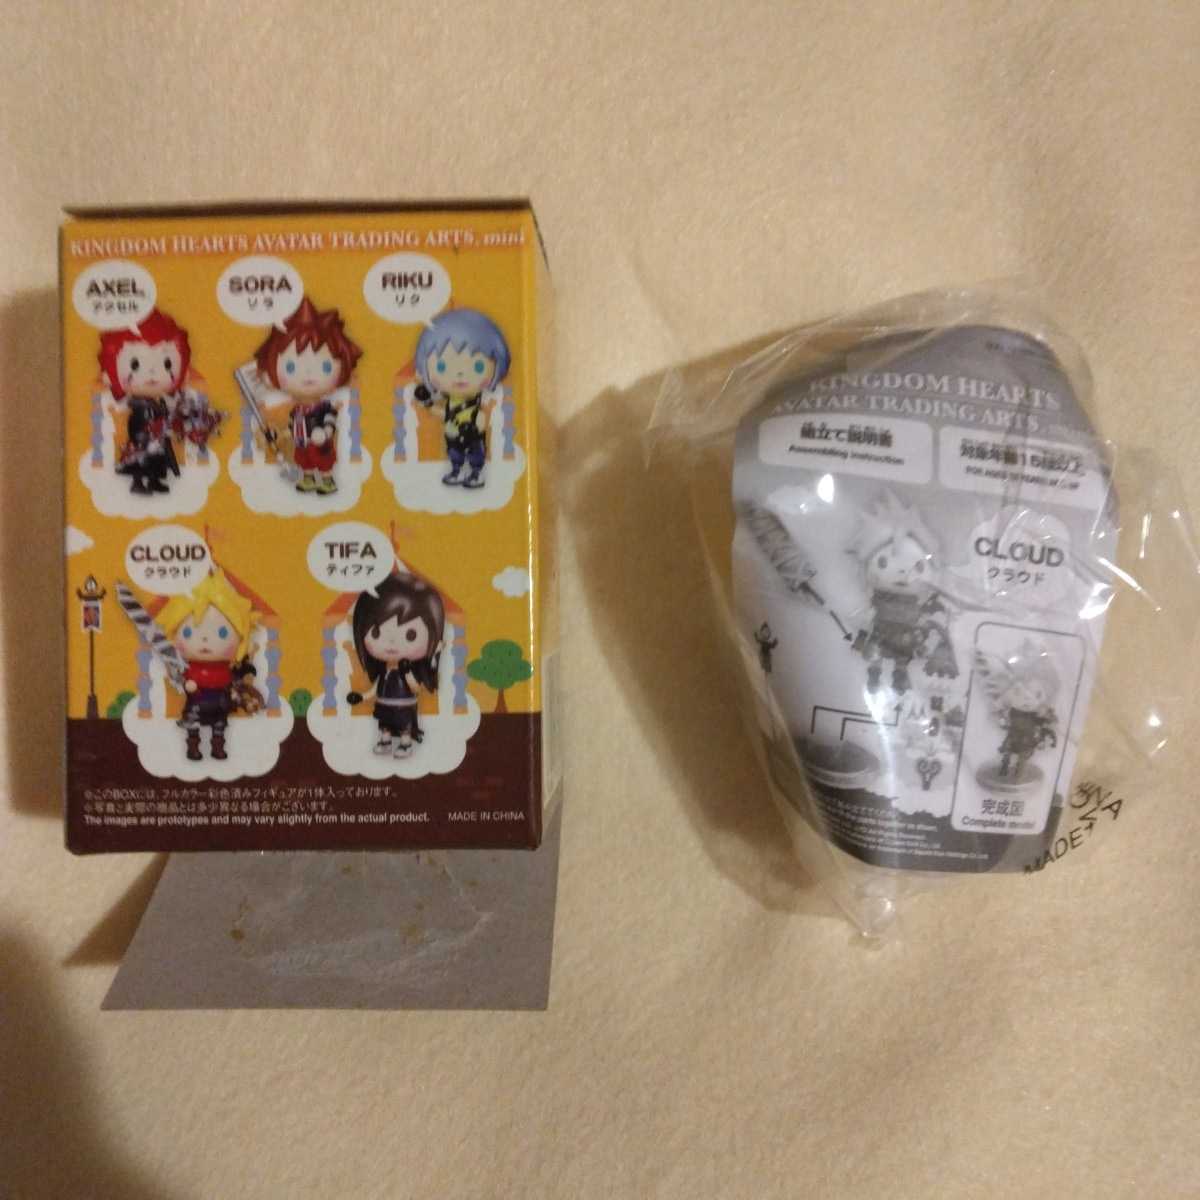  стоимость доставки 200 иен др. KINGDOM HEARTS AVATAR TRADING ARTS mini Kingdom Hearts аватар trailing a- погружен в машину ni#k громкий #